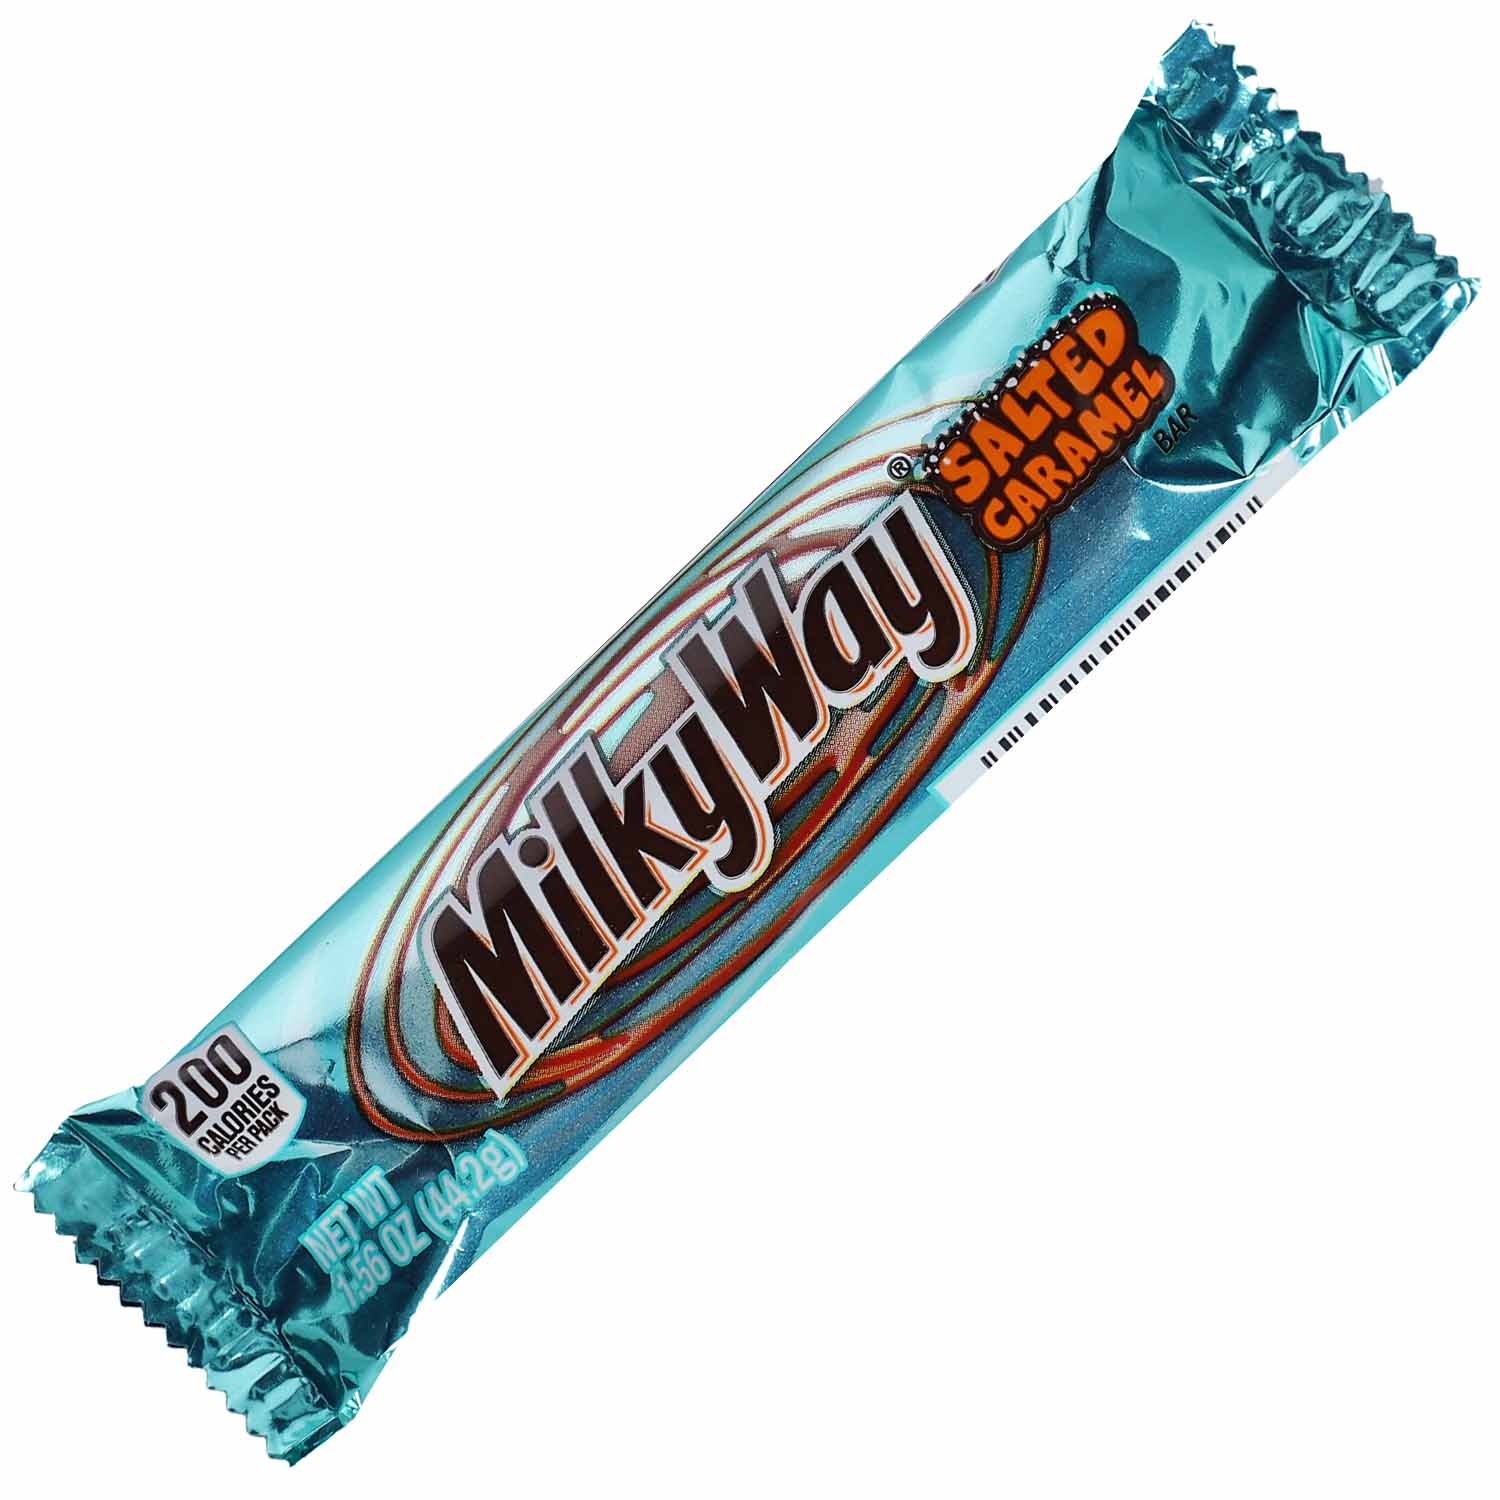 Milky Way Salted Caramel 44,2g | Online kaufen im World of Sweets Shop